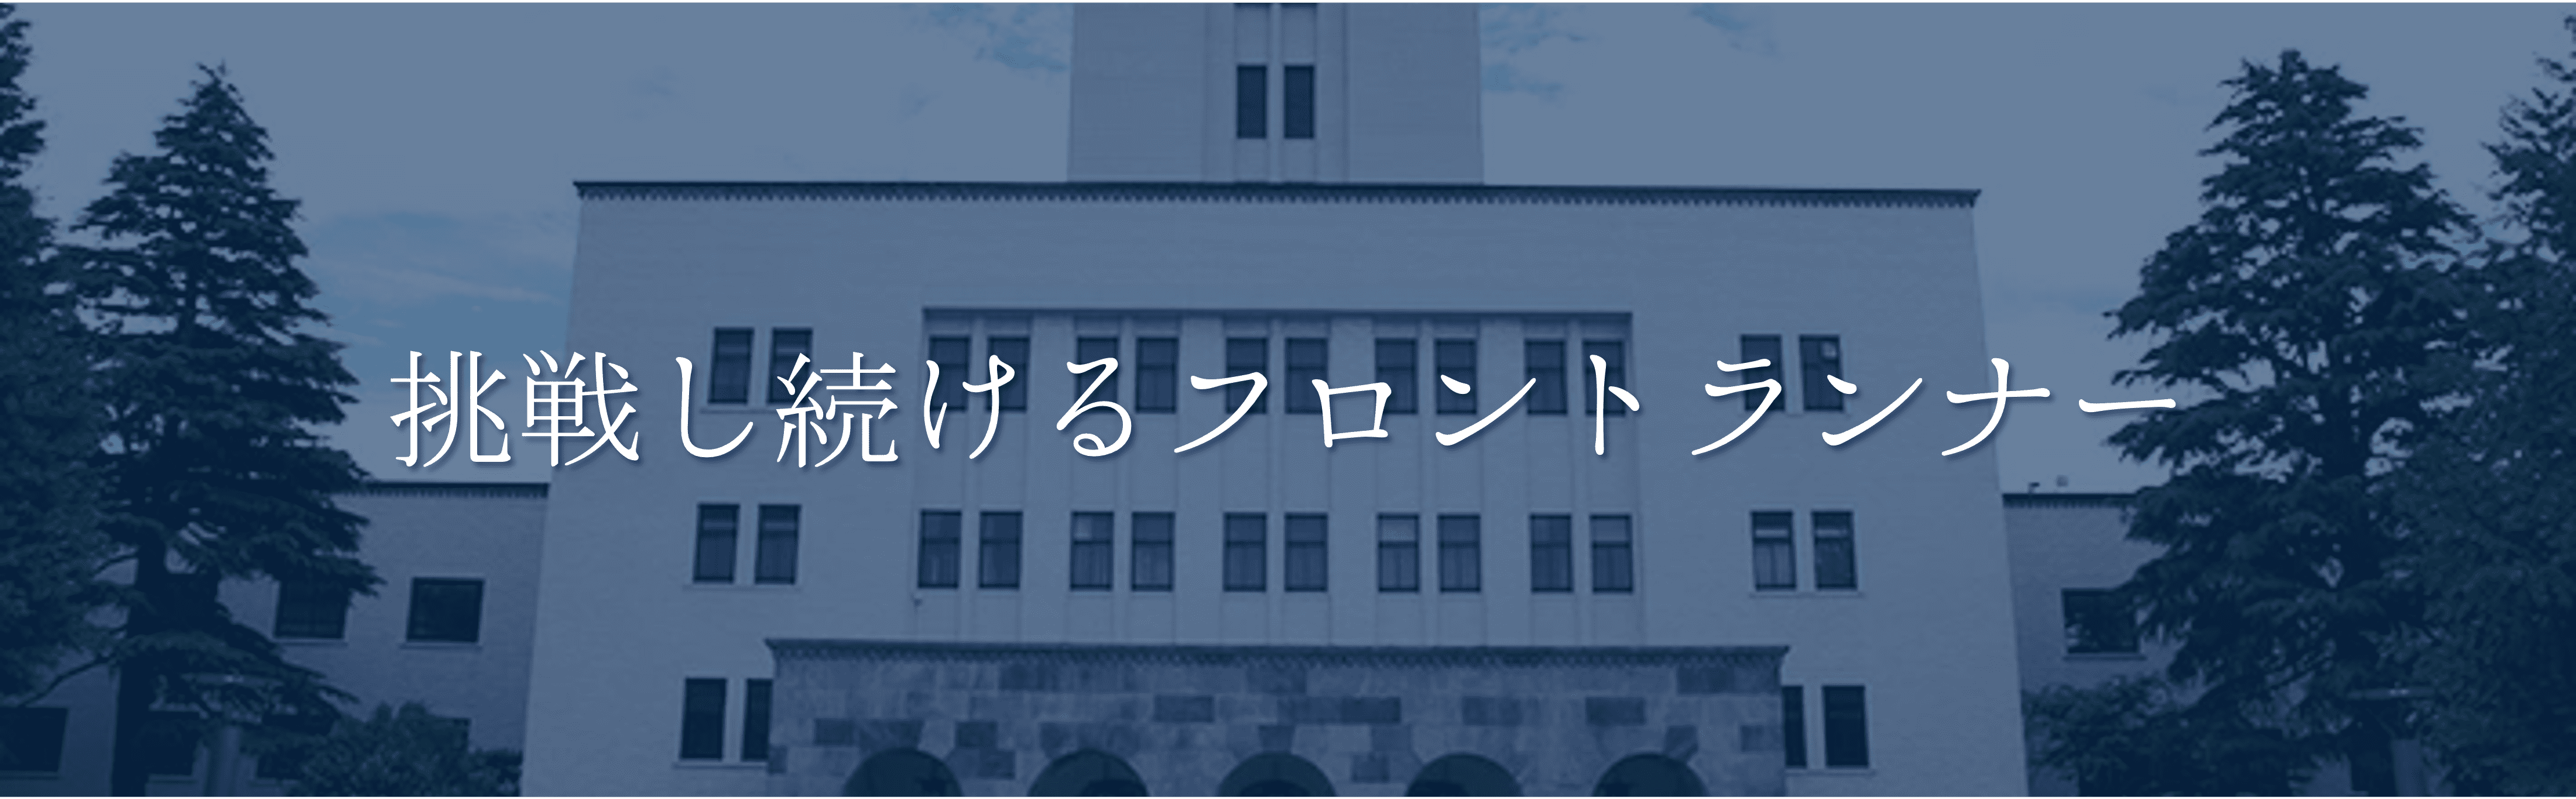 東京工業大学モットー